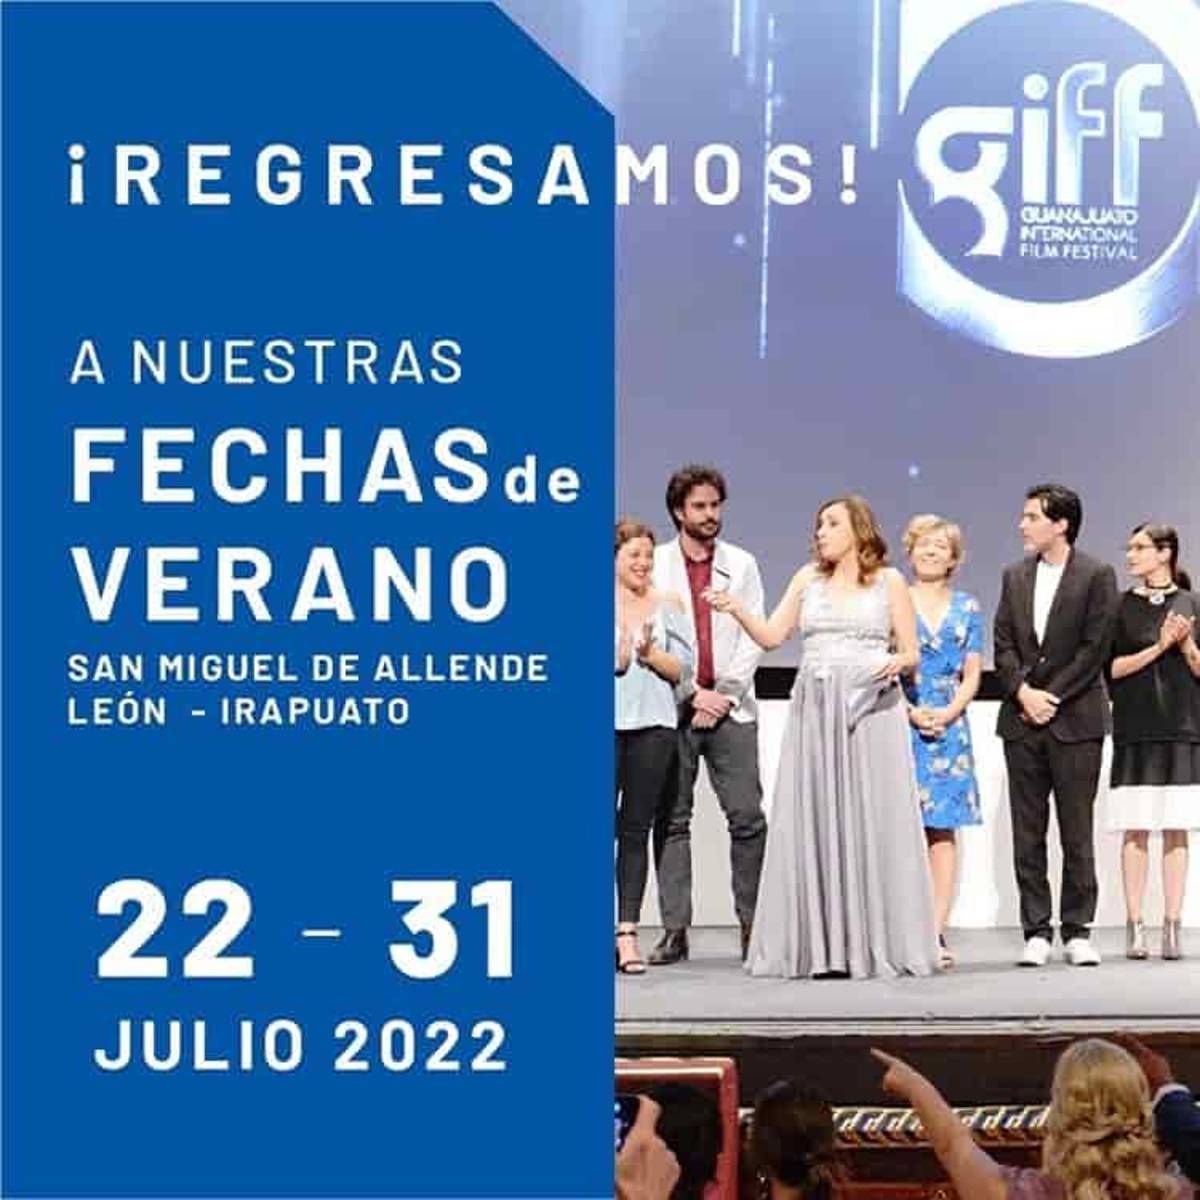 Este año se cumple un cuarto de siglo de que se fundó el Festival Internacional de Cine de Guanajuato. La edición 25 se llevará a cabo en el verano y aunque todavía faltan unos meses, el festival ya dio algunos adelantos.